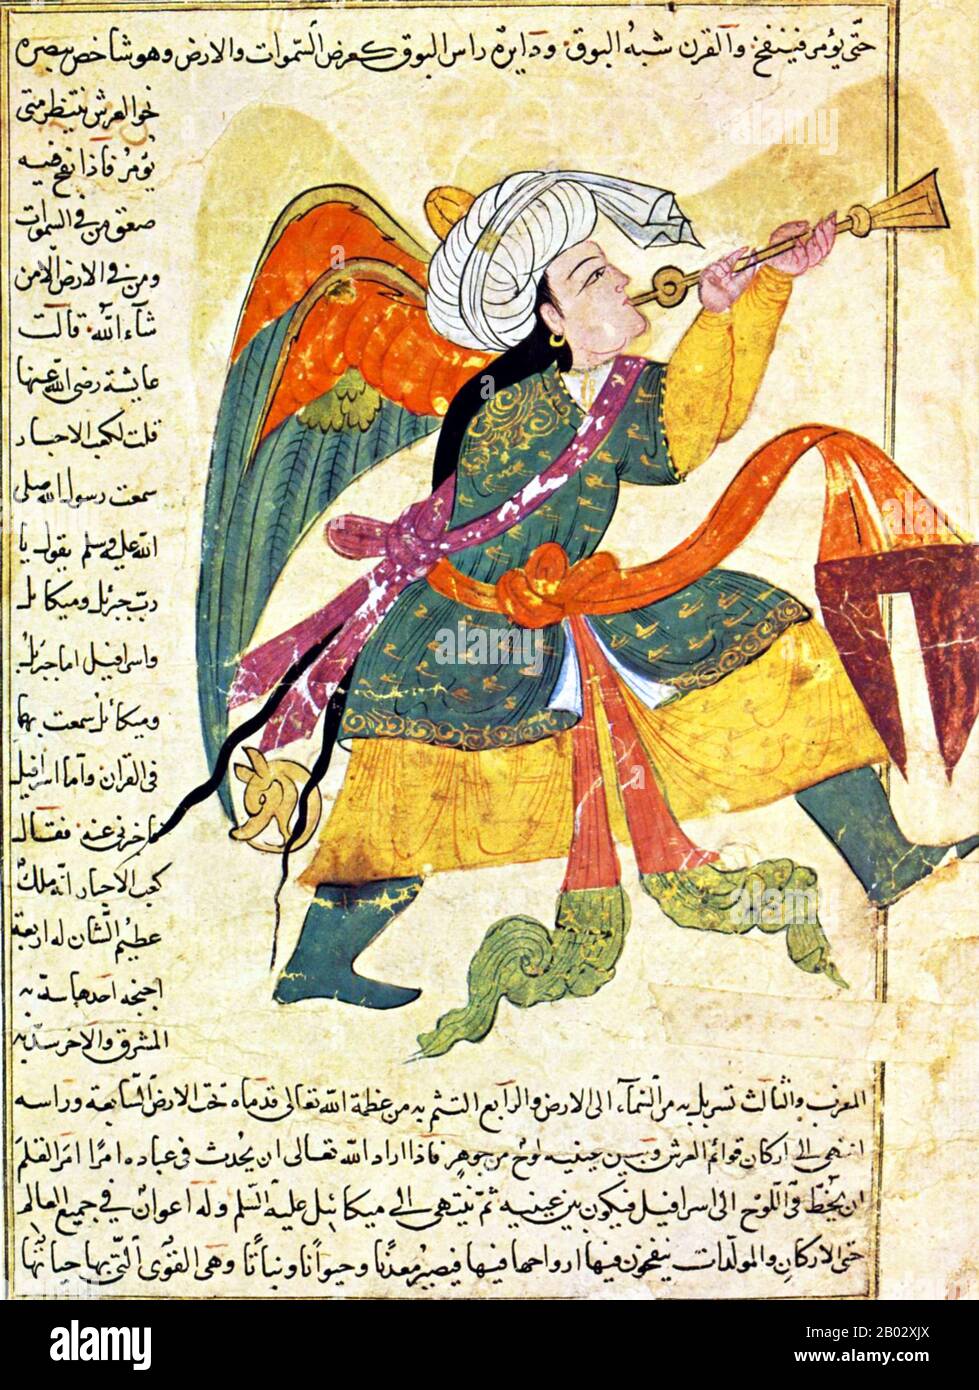 Abu Yahya Zakariya' ibn Muhammad al-Qazwini (nato nel 1203 – morto nel 1283), è stato un . Nato nella città persiana di Qazvin, discese da Anas ibn Malik, Zakariya' ibn Muhammad al-Qazwini è stato esperto legale e giudice (qadhi) in diverse località in Persia e a Baghdad. Viaggiò in Mesopotamia e in Siria, e infine entrò nel circolo patronizzato dal governatore di Baghdad, ‘Ata-Malik Juwayni (m. 1283 CE). Foto Stock